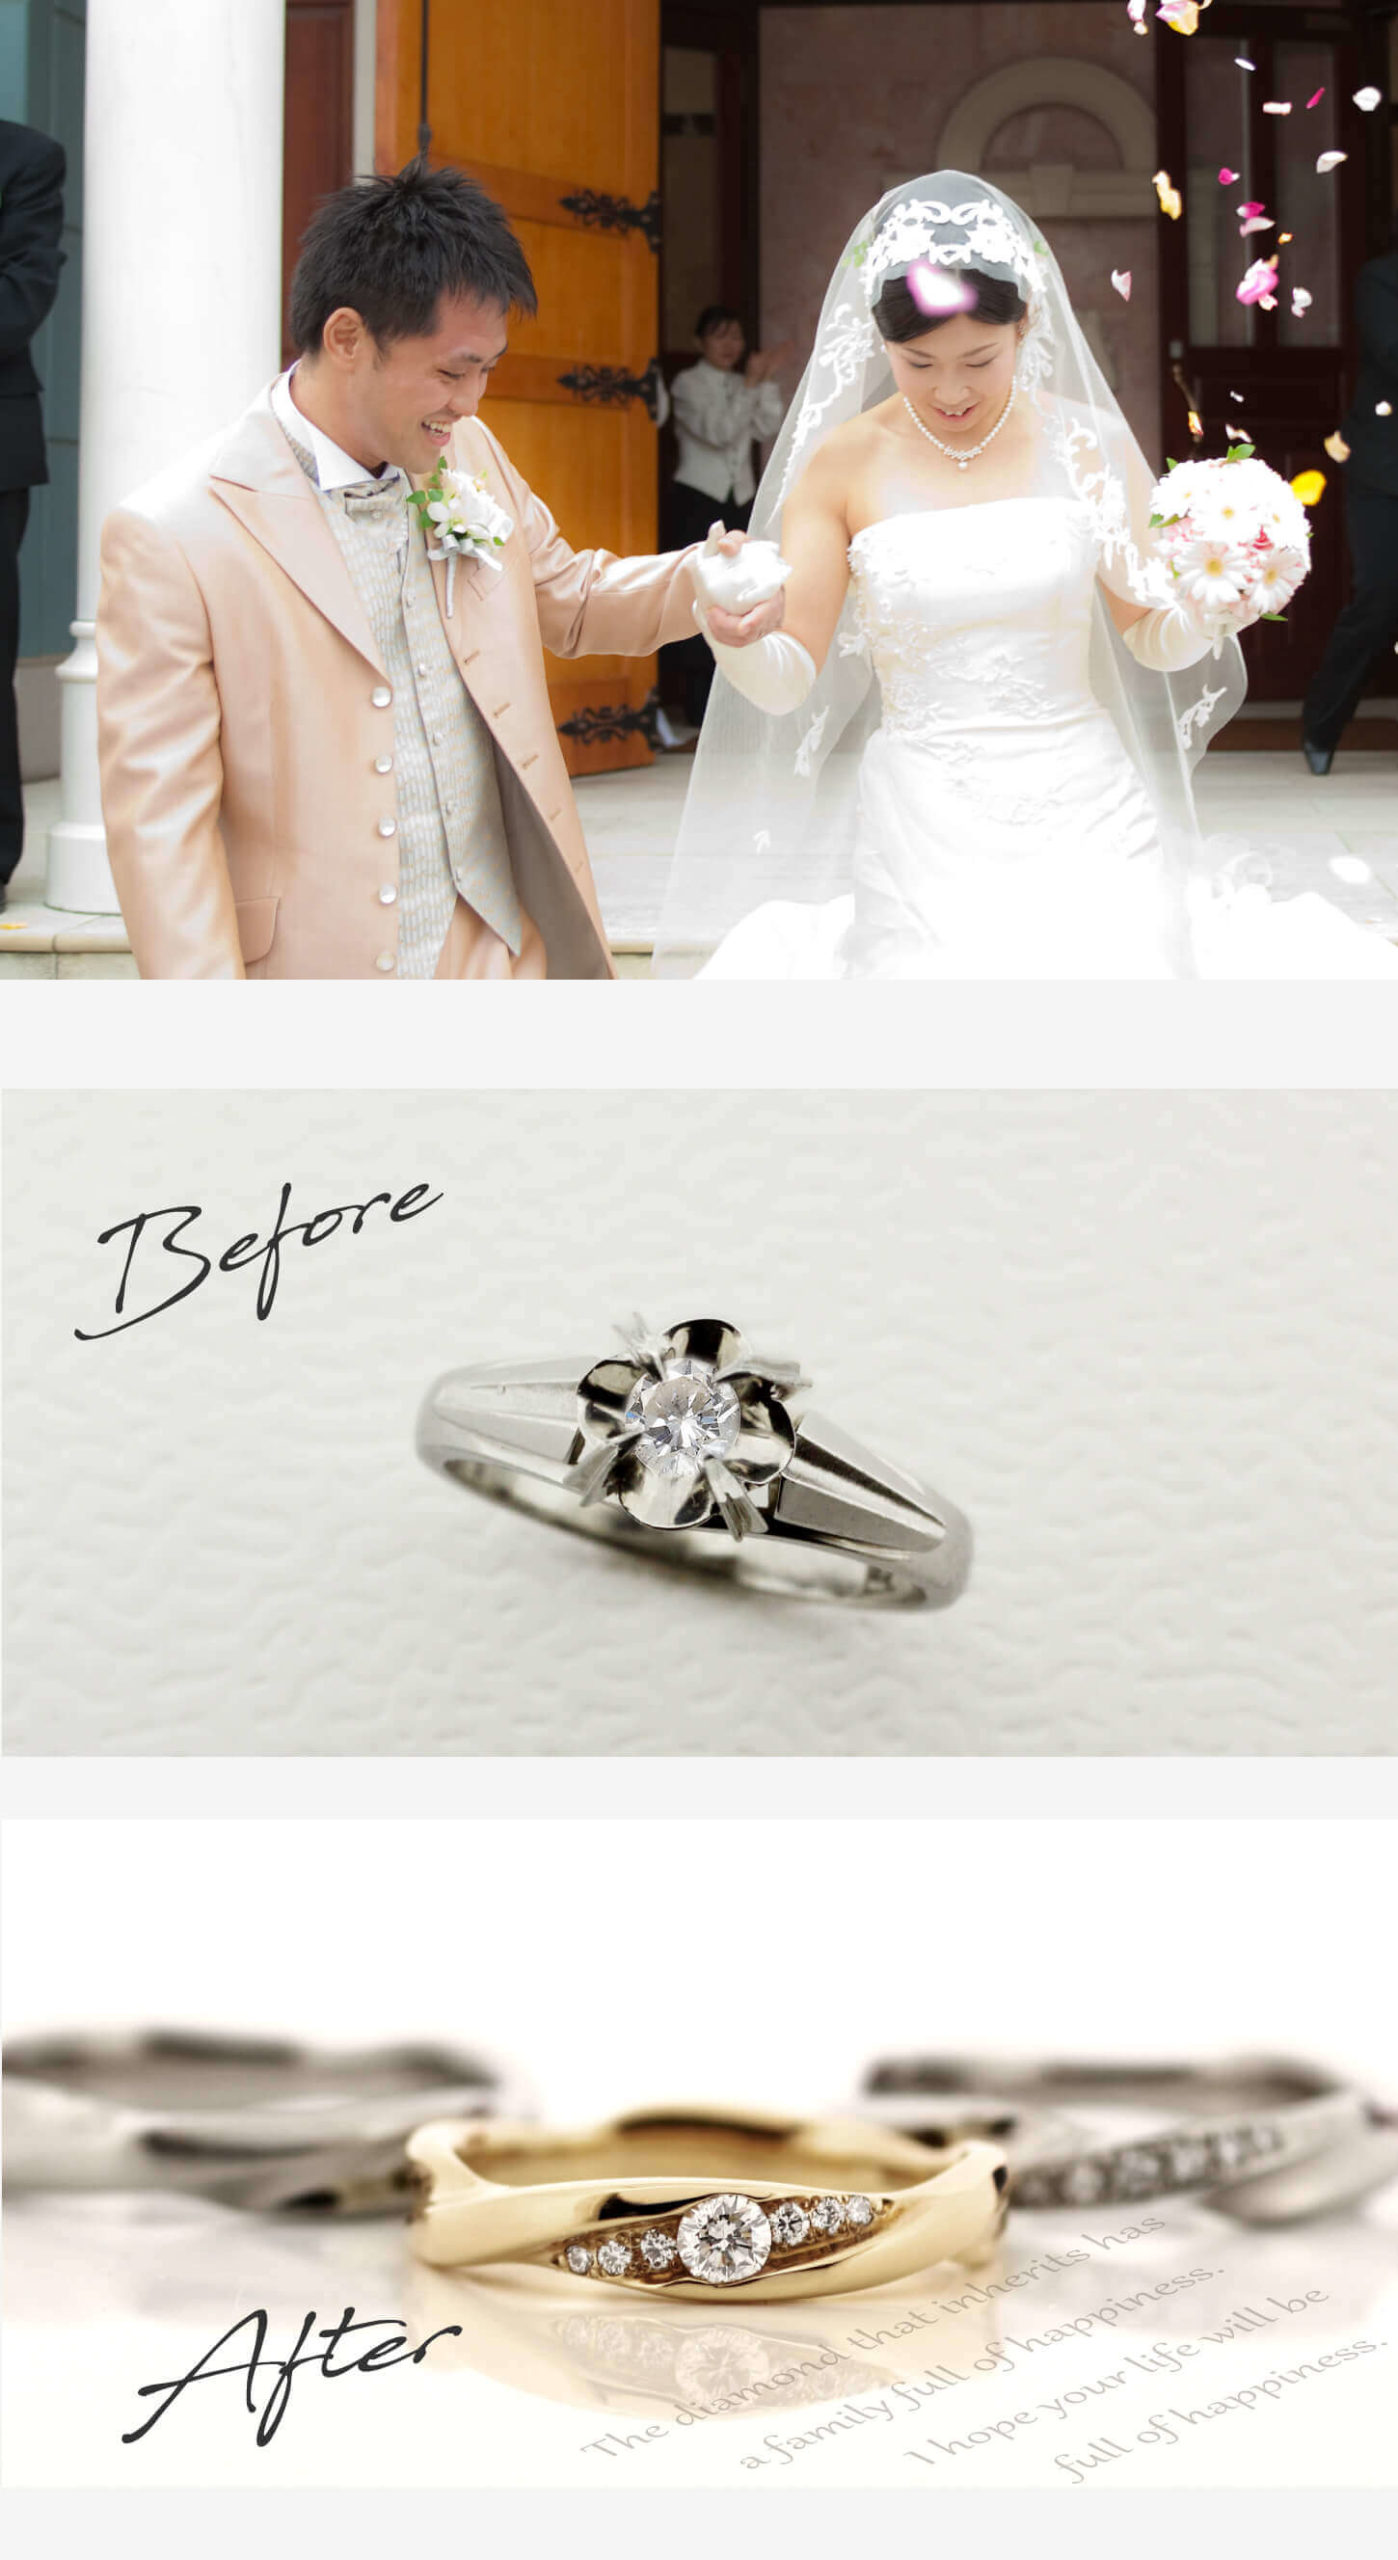 お客様インタビューI様のビフォーアフターの画像。結婚式の二人の姿、ビフォーは母から譲られた1粒タイプの立て爪の婚約指輪、アフターはファミリーリングとして、I様夫婦と同じデザインにリモデルして母にプレゼントした、イエローゴールドの指輪